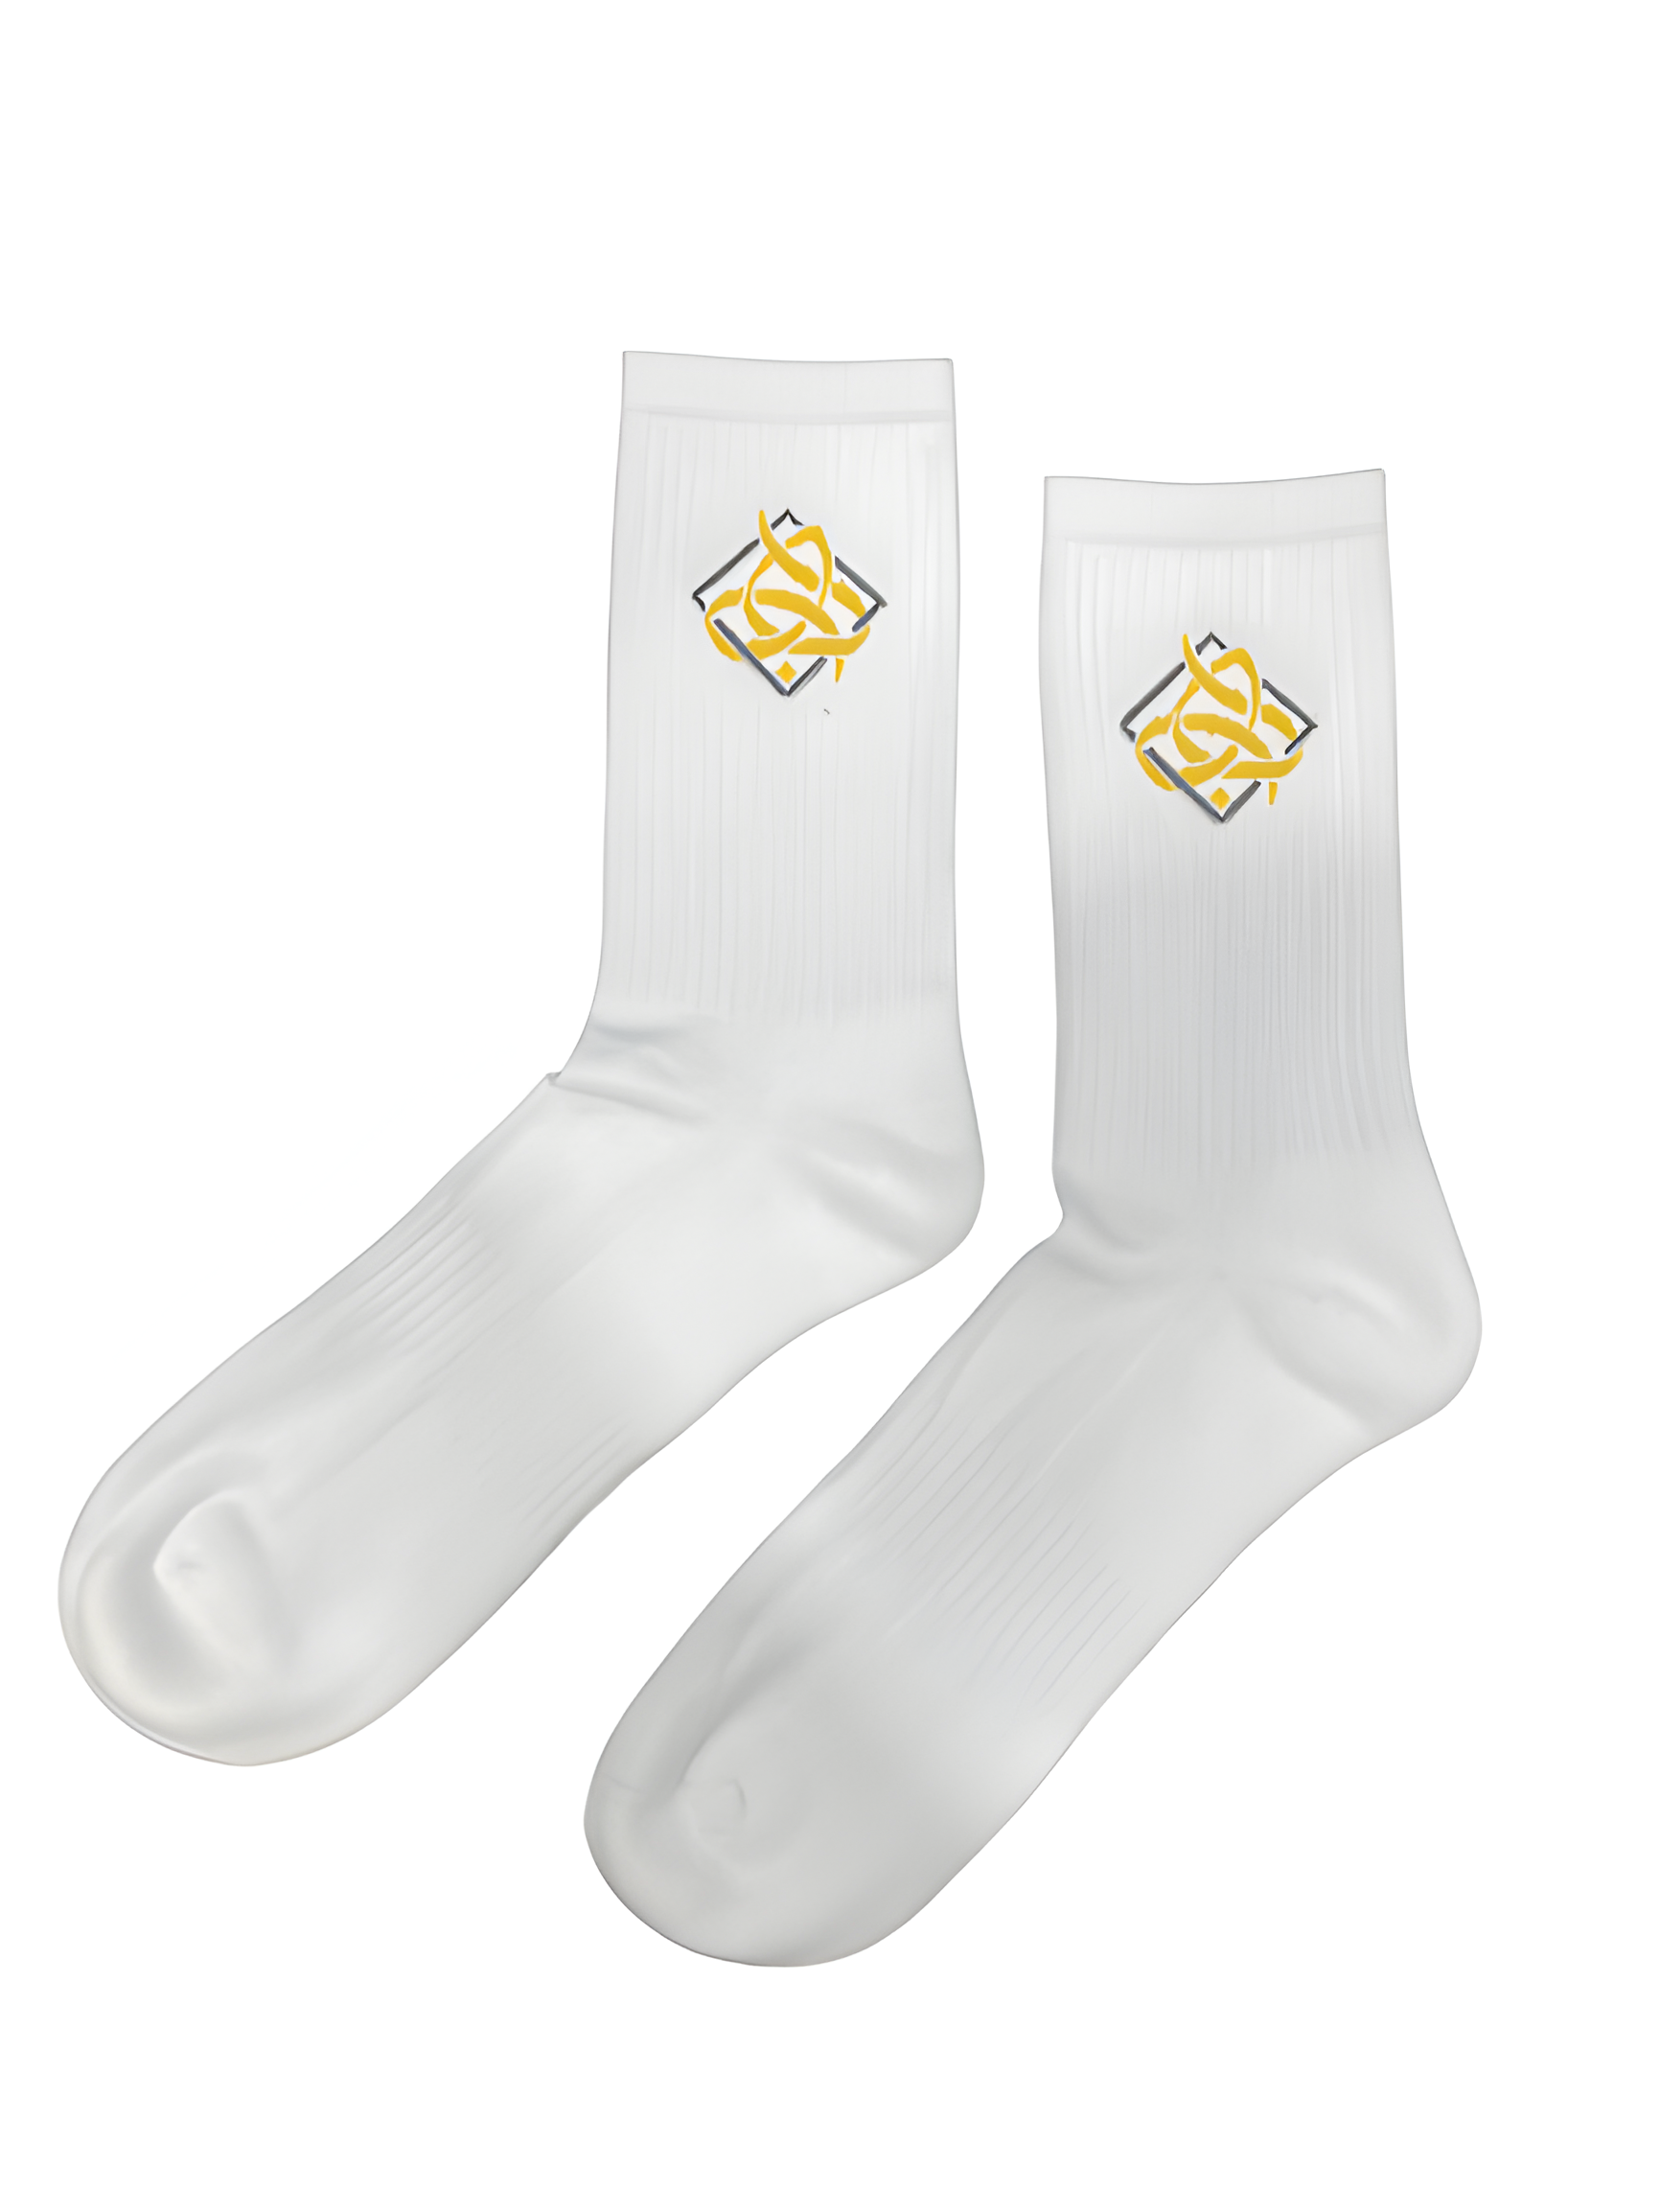 Haba Hub OG White Socks